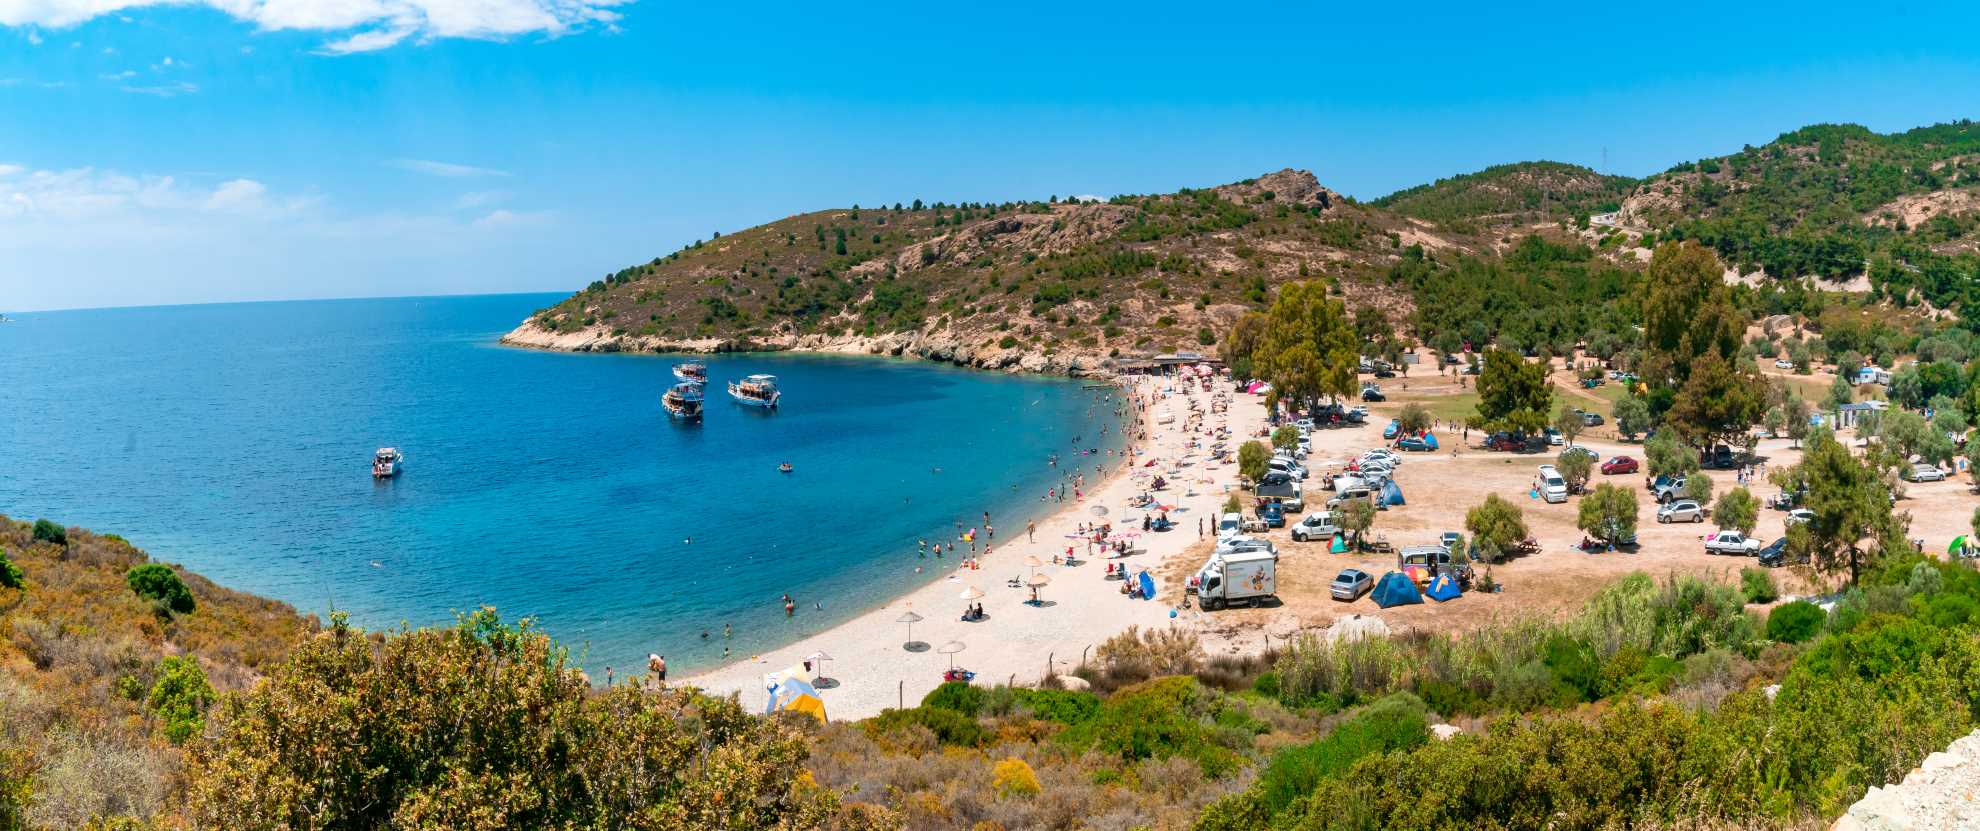 Camping am Strand in Phocaea, Golf von İzmir, Türkei - Campingplätze in der Türkei